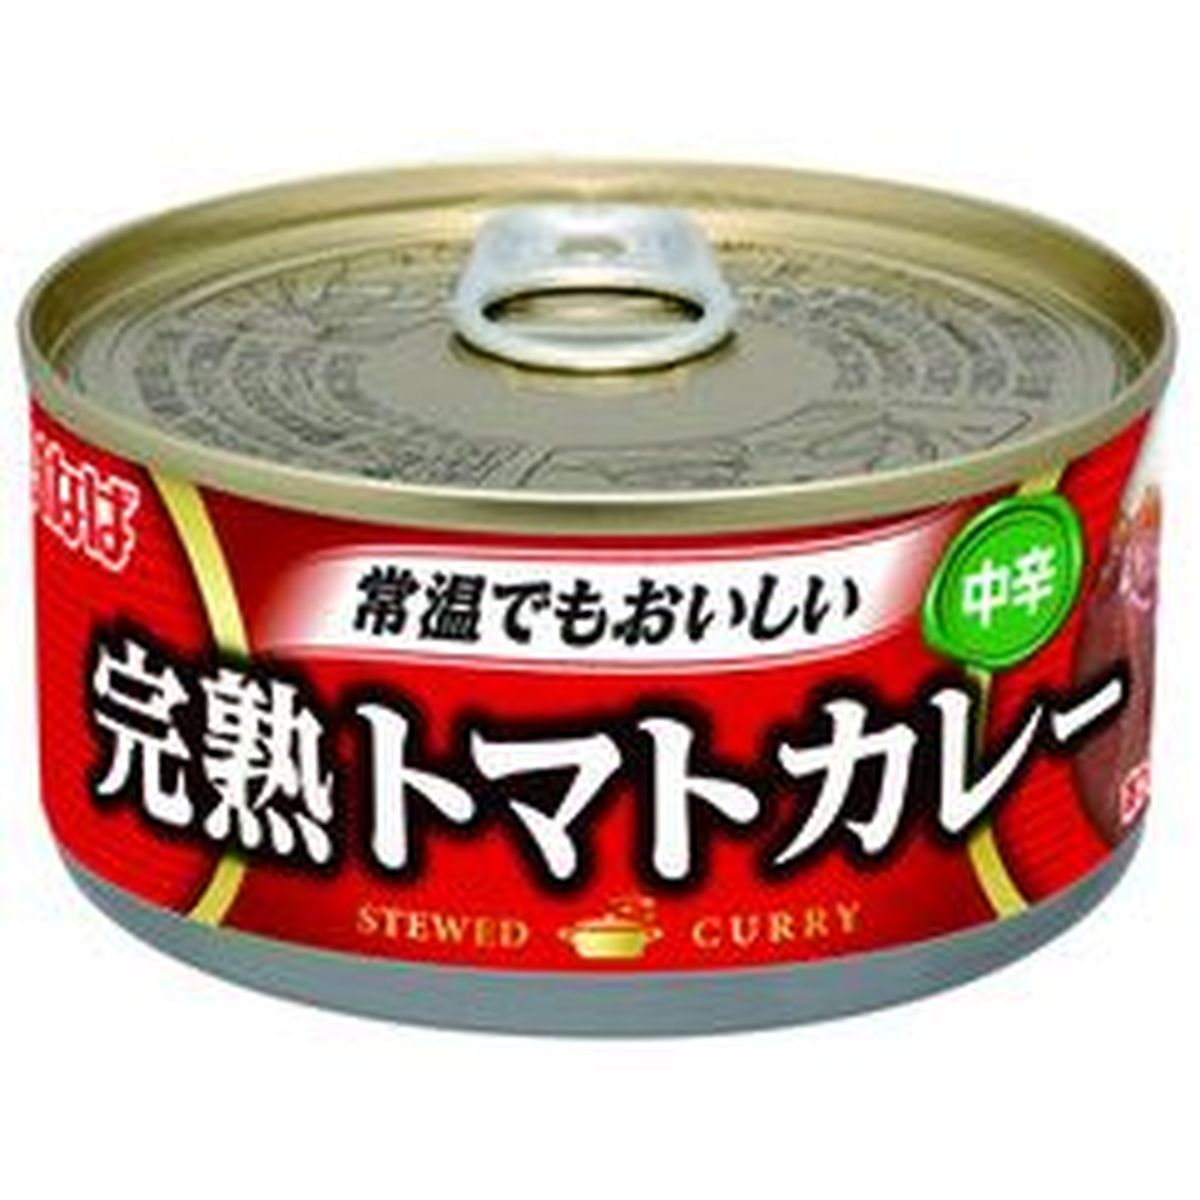 【6個入リ】イナバ食品 完熟トマトカレー 缶 165g